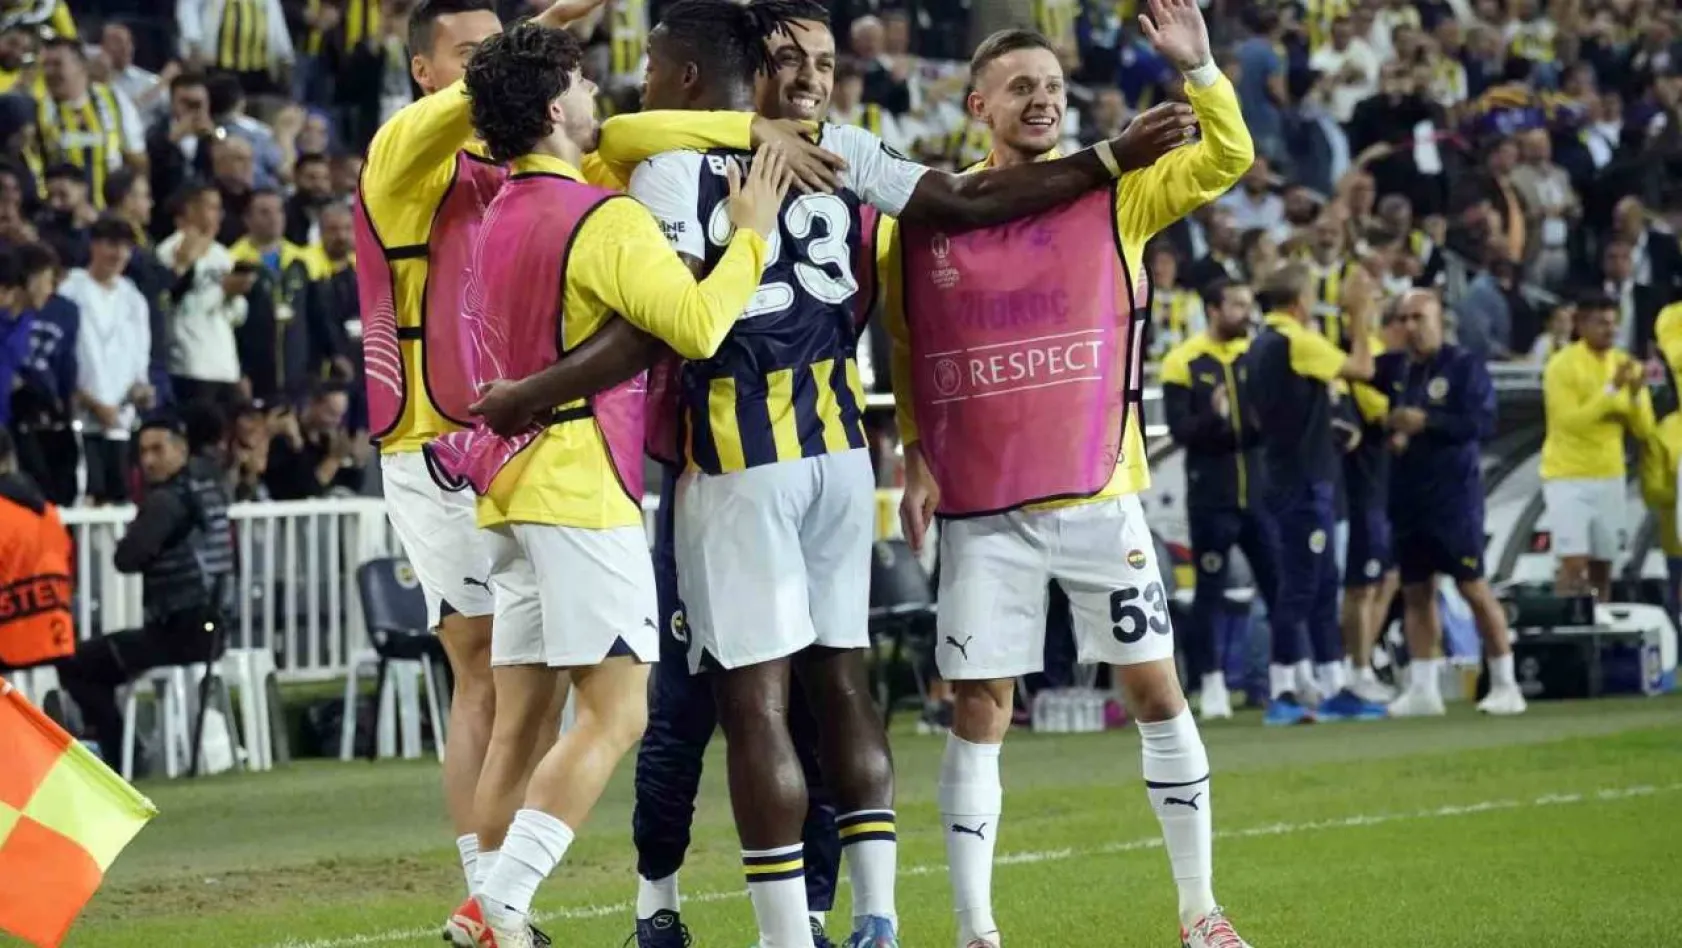 UEFA Avrupa Konferans Ligi: Fenerbahçe: 1 - Ludogorets Razgrad: 0 (İlk yarı)